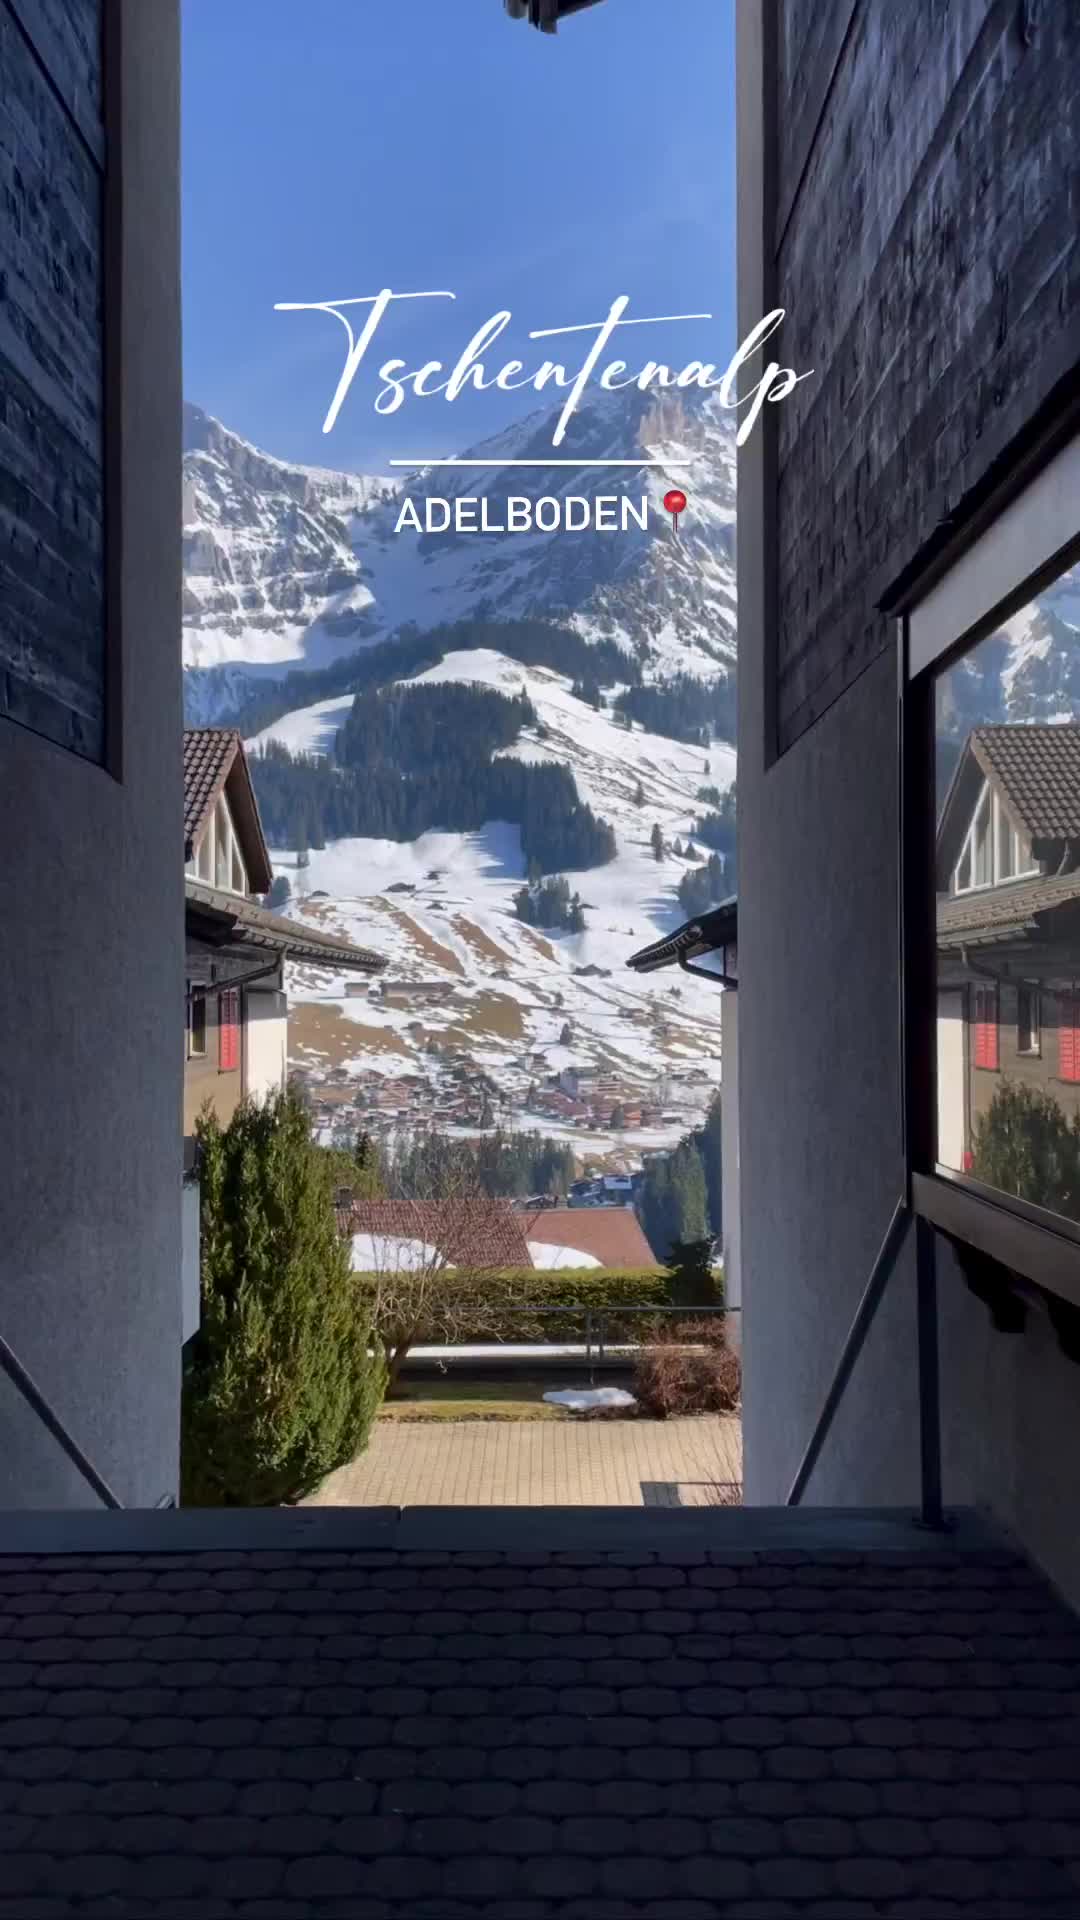 Discover Tschentenalp: Adelboden's Winter Wonderland